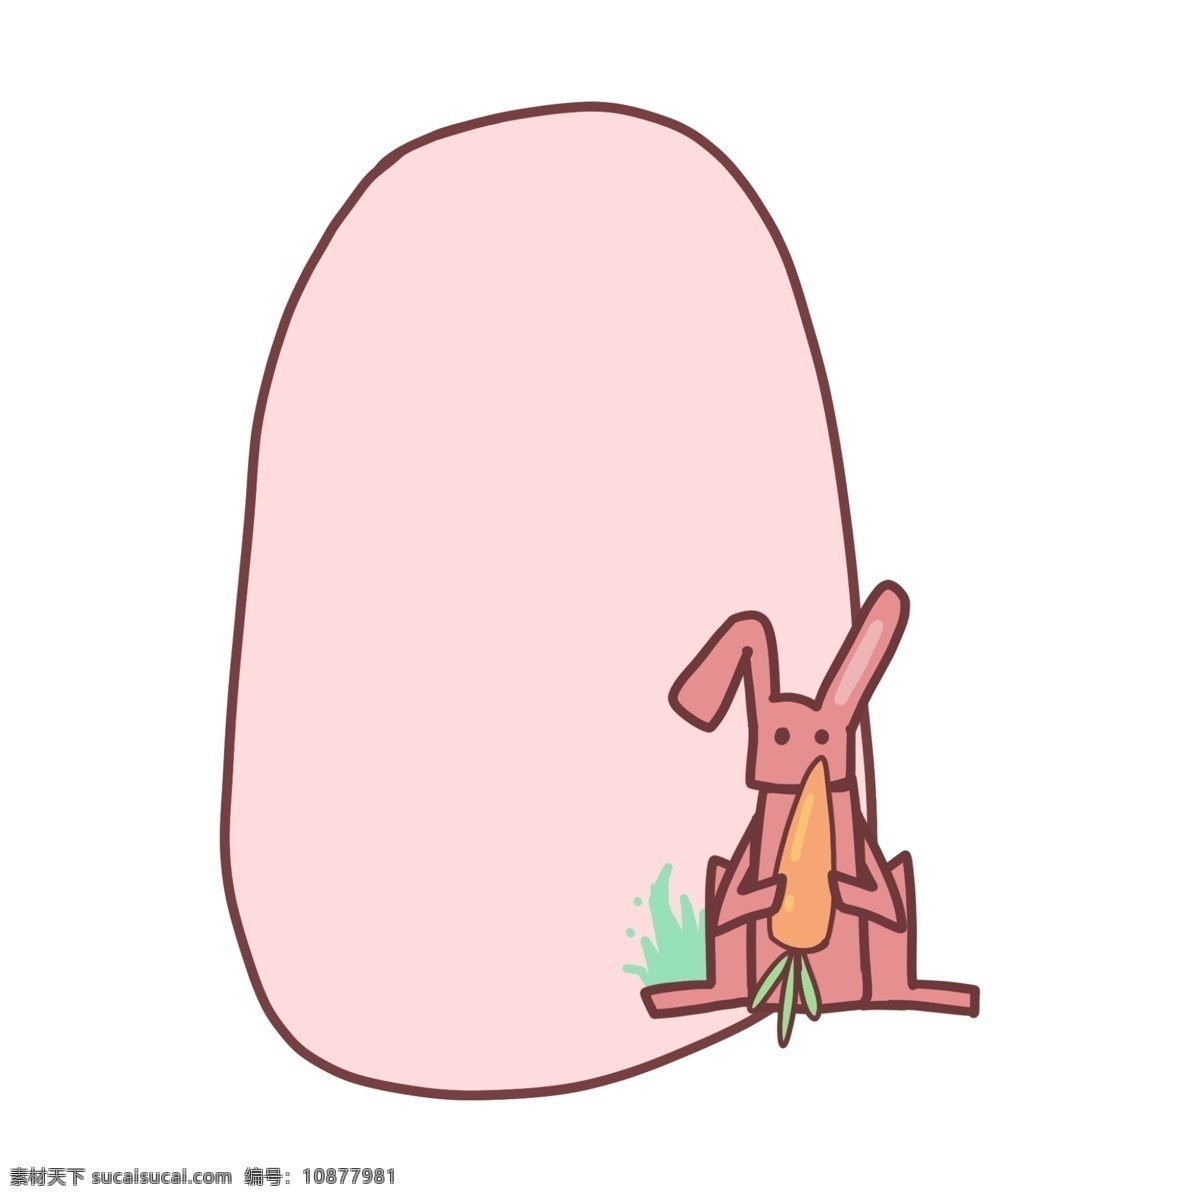 兔子边框插画 动物 食物 边框